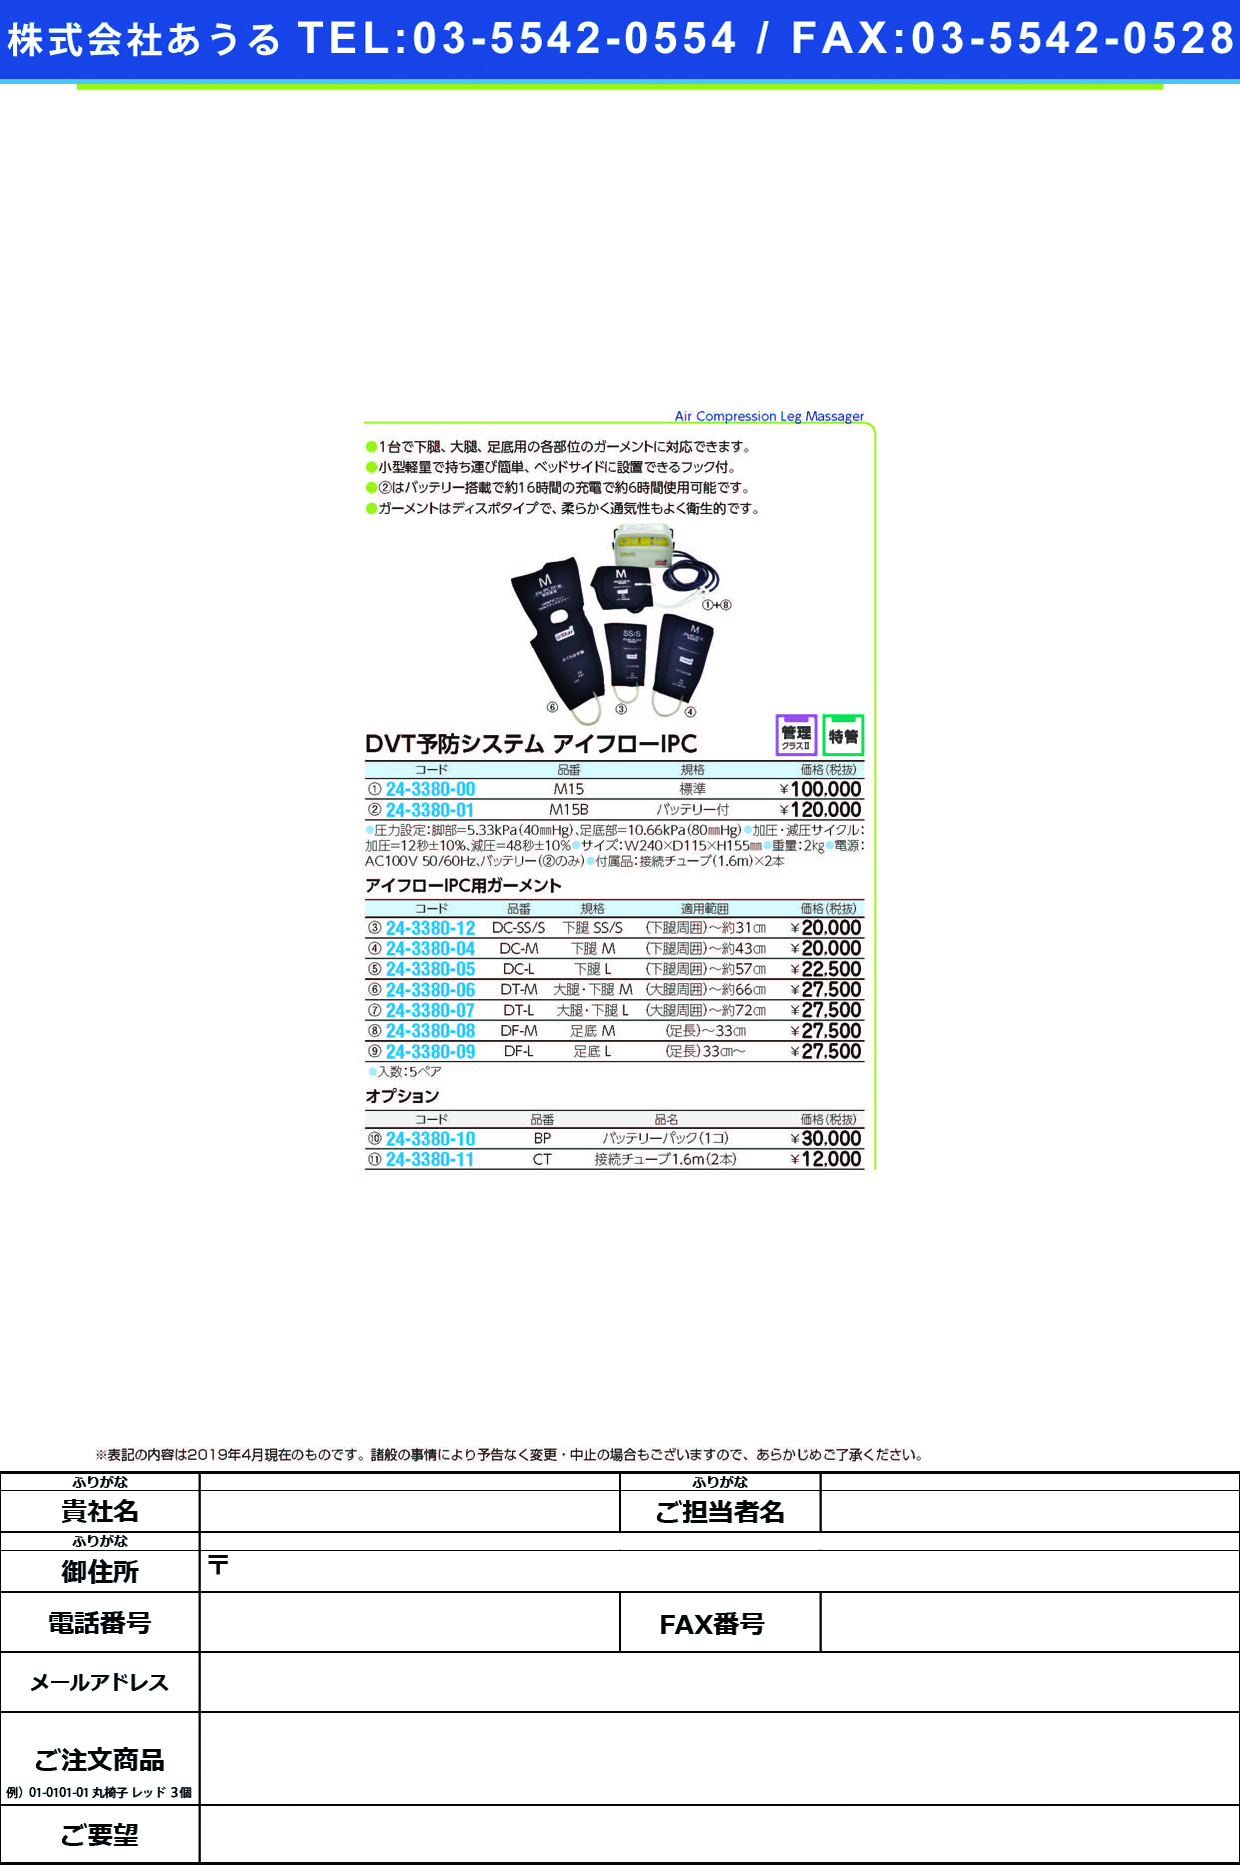 (24-3380-00)アイフローＩＰＣ（ＤＶＴ予防システム M15(ﾋｮｳｼﾞｭﾝ) ｱｲﾌﾛｰIPC【1台単位】【2019年カタログ商品】